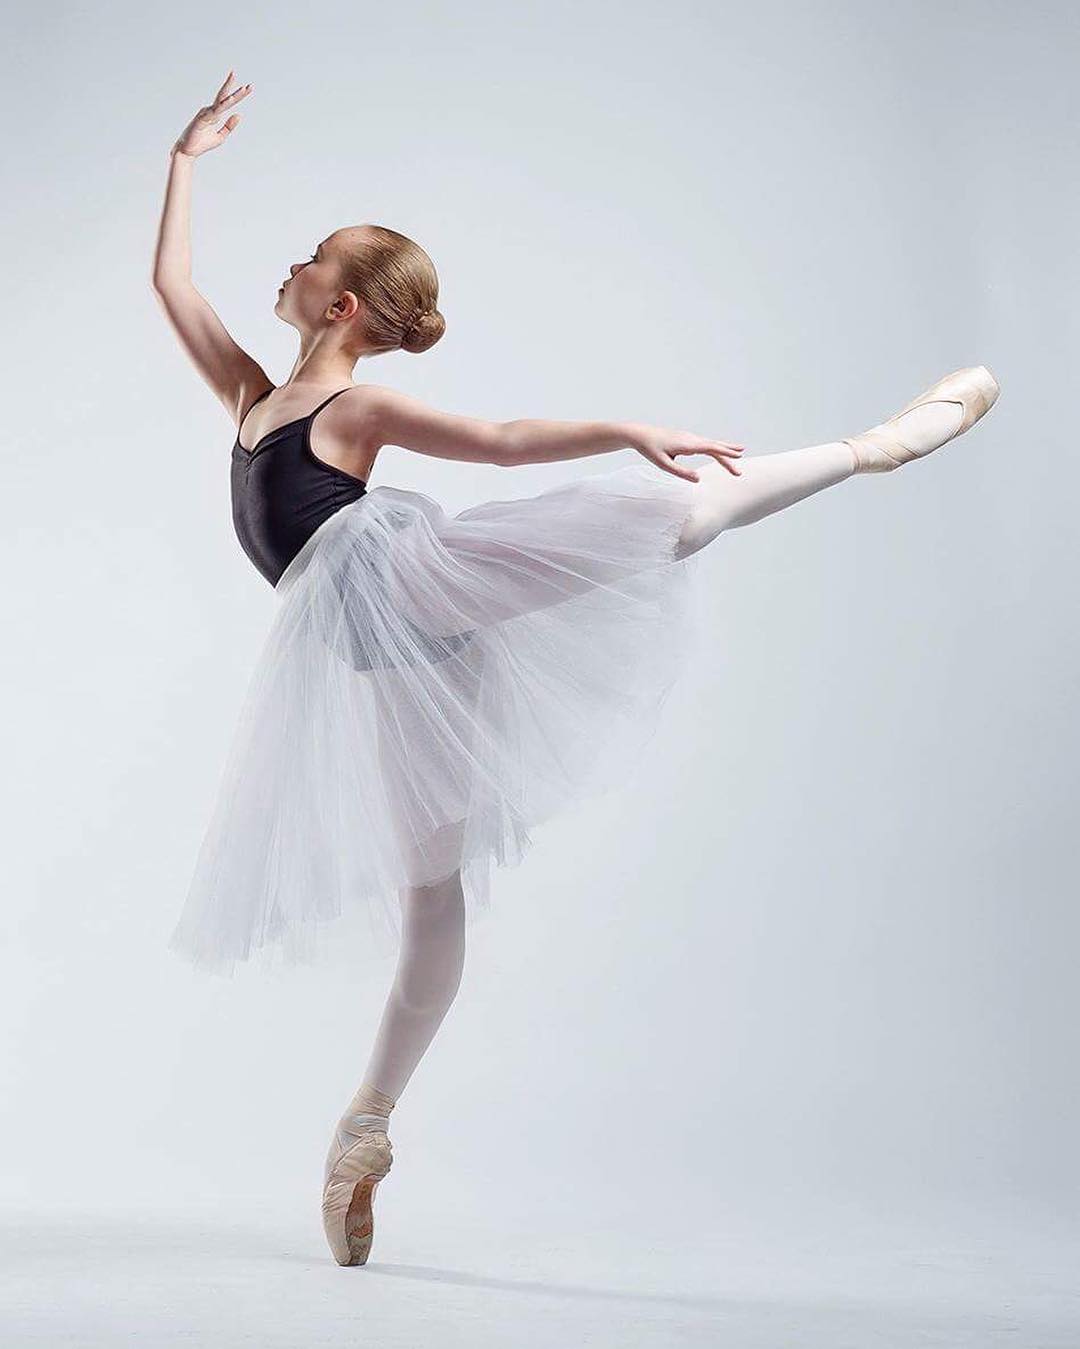 13-летняя балерина поразила всех своей гибкостью и чувством равновесия